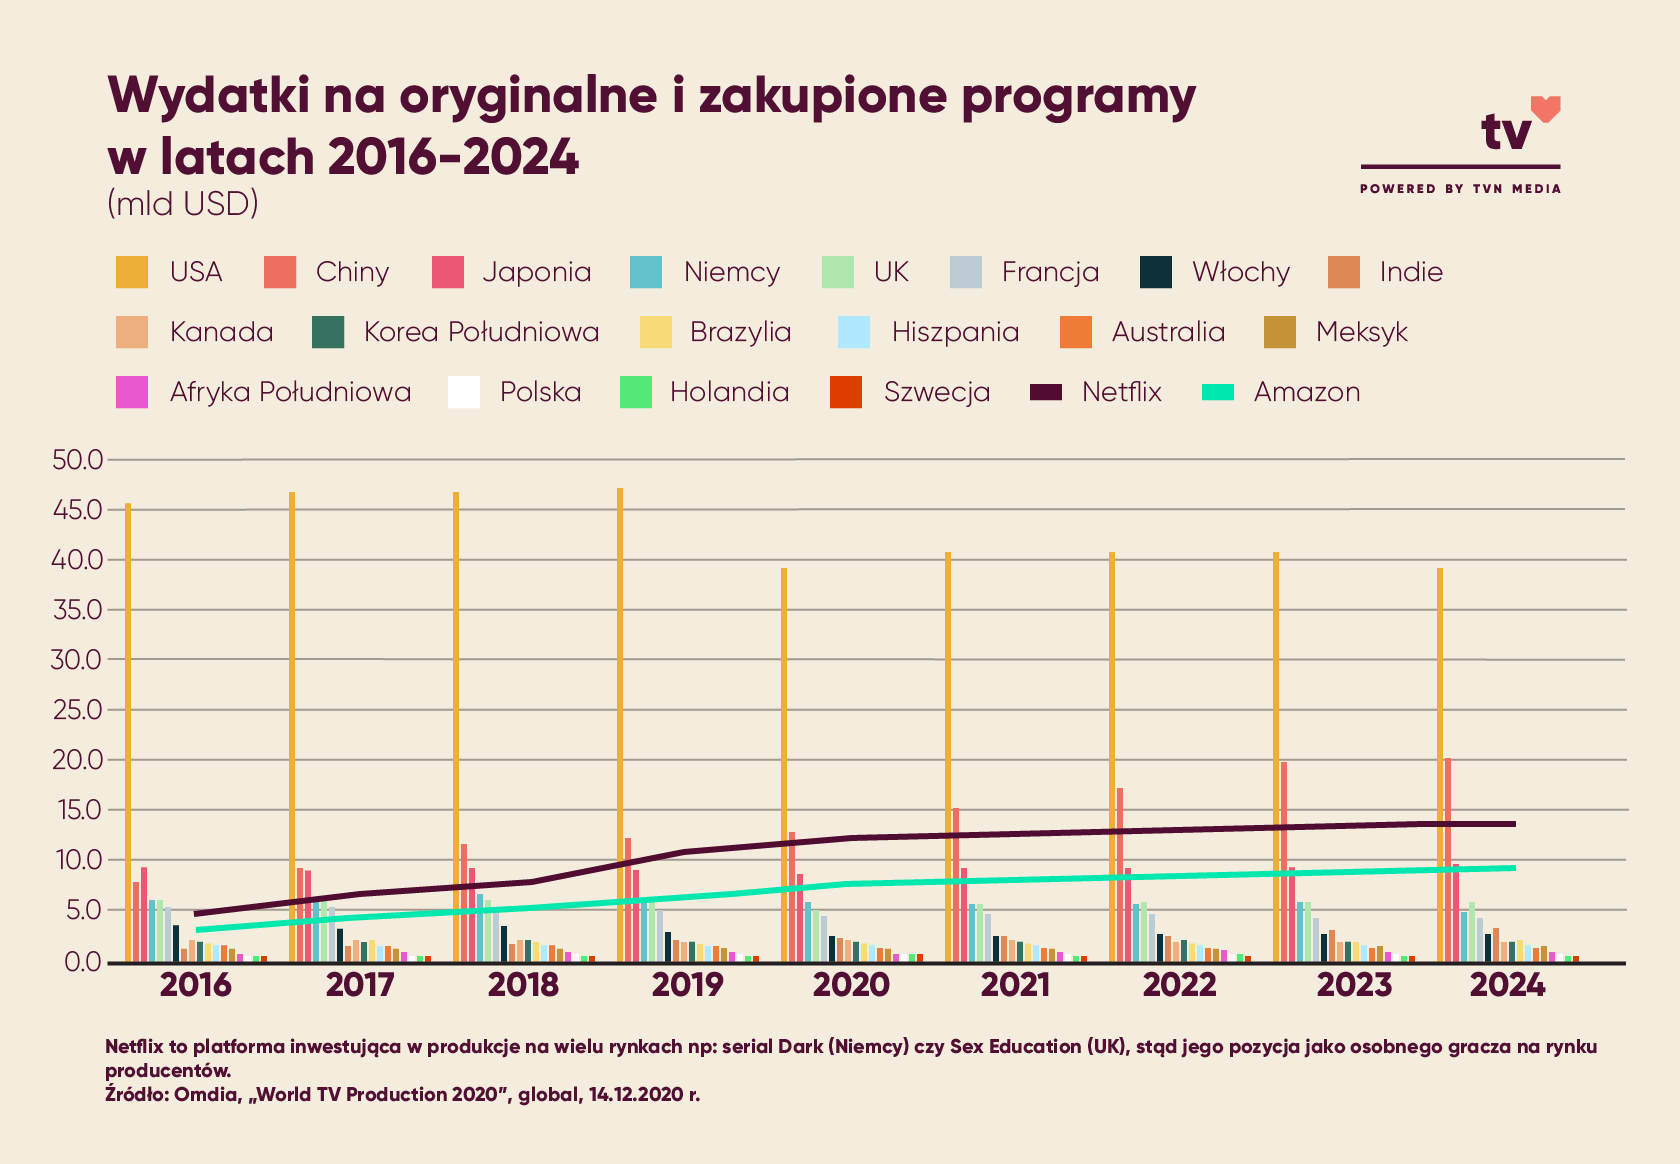 Wydatki na oryginalny i zakupiony programy w latach 2016-2024 (mld USD)